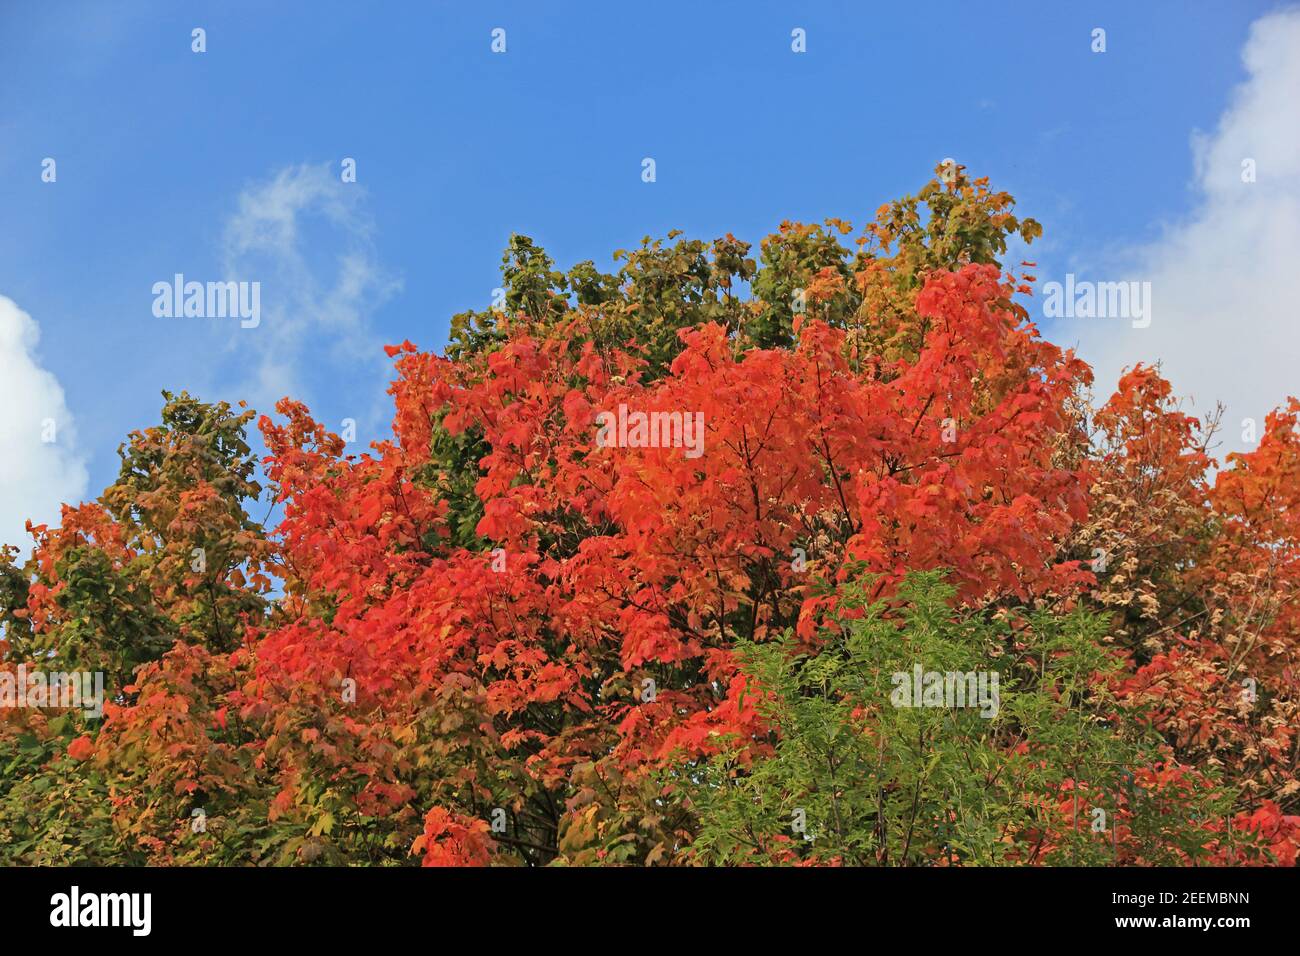 Colourful autumn foliage Stock Photo